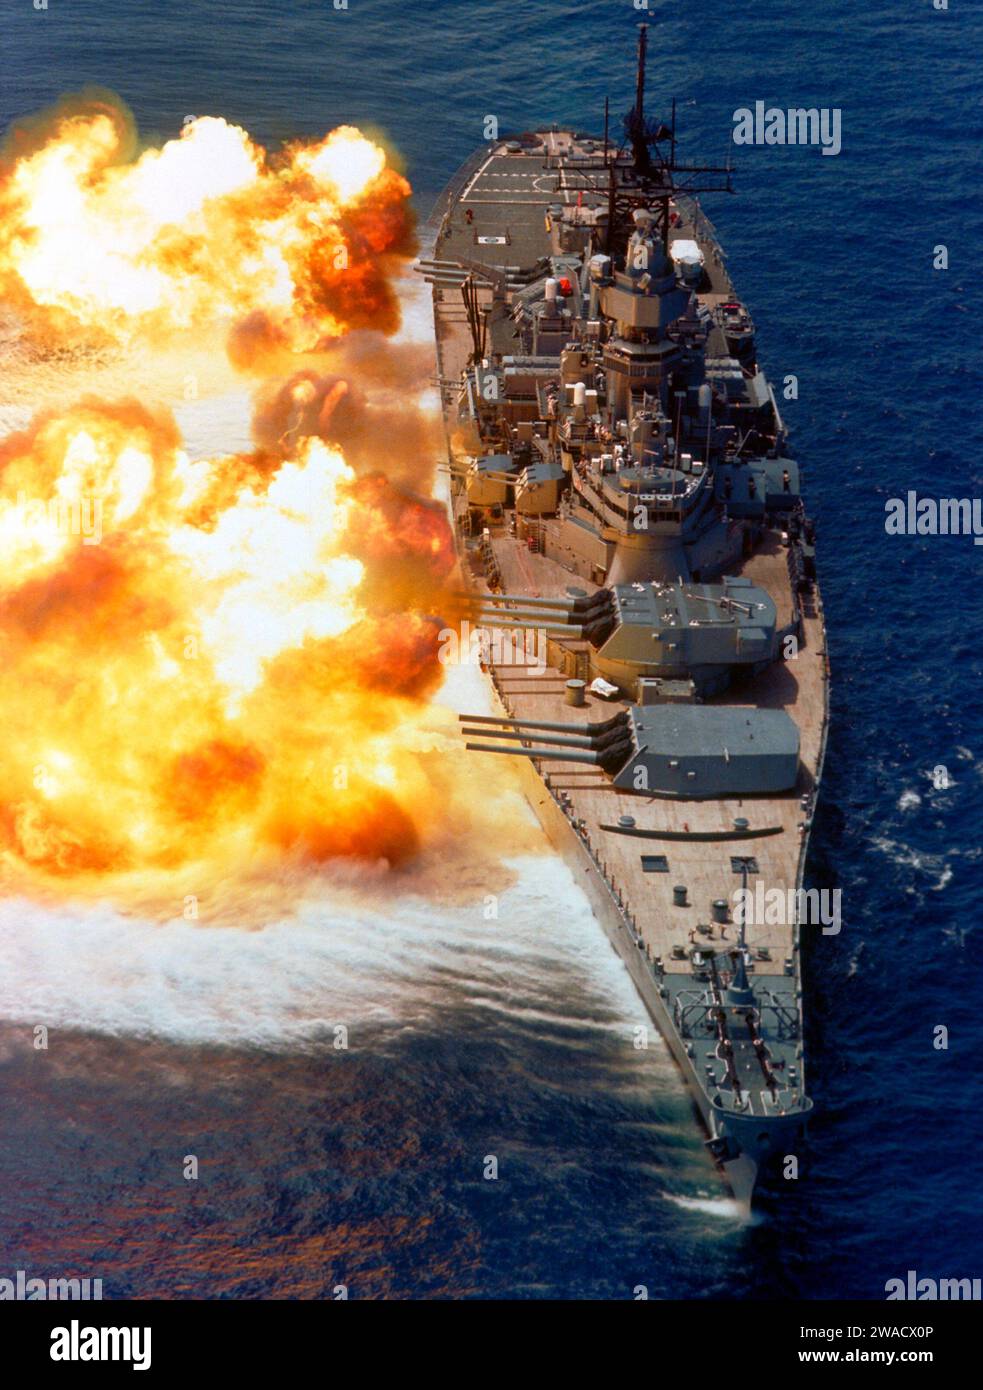 Une vue à la proue du cuirassé USS IOWA (BB-61) tirant ses canons Mark 7 16 pouces / 50 de calibre sur tribord lors d'une démonstration de puissance de feu 1984 Banque D'Images